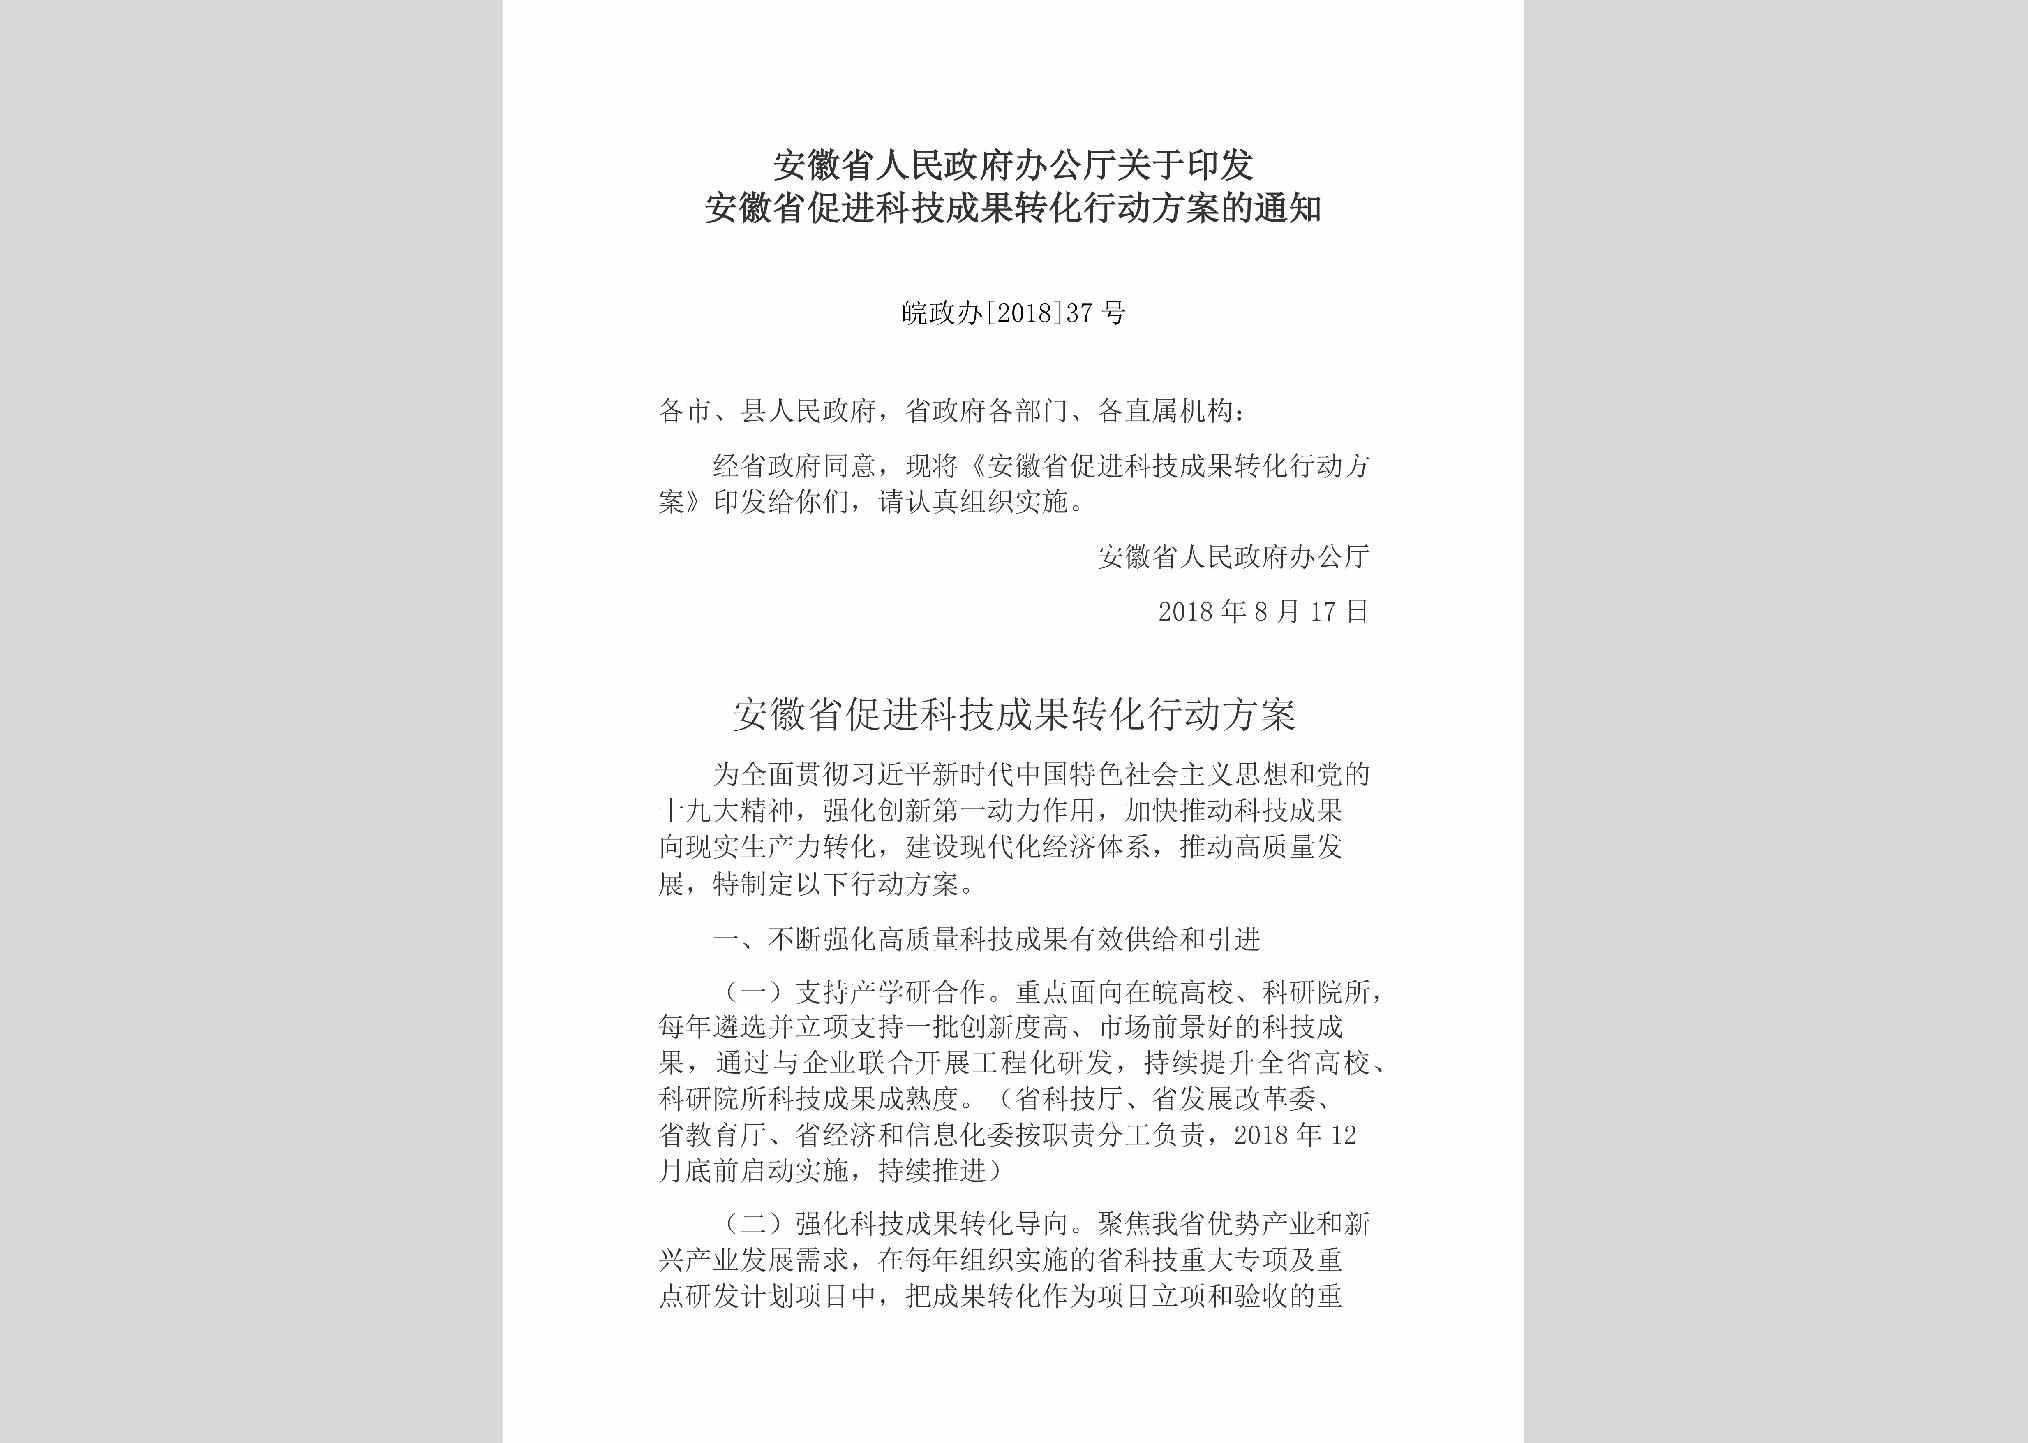 皖政办[2018]37号：安徽省人民政府办公厅关于印发安徽省促进科技成果转化行动方案的通知